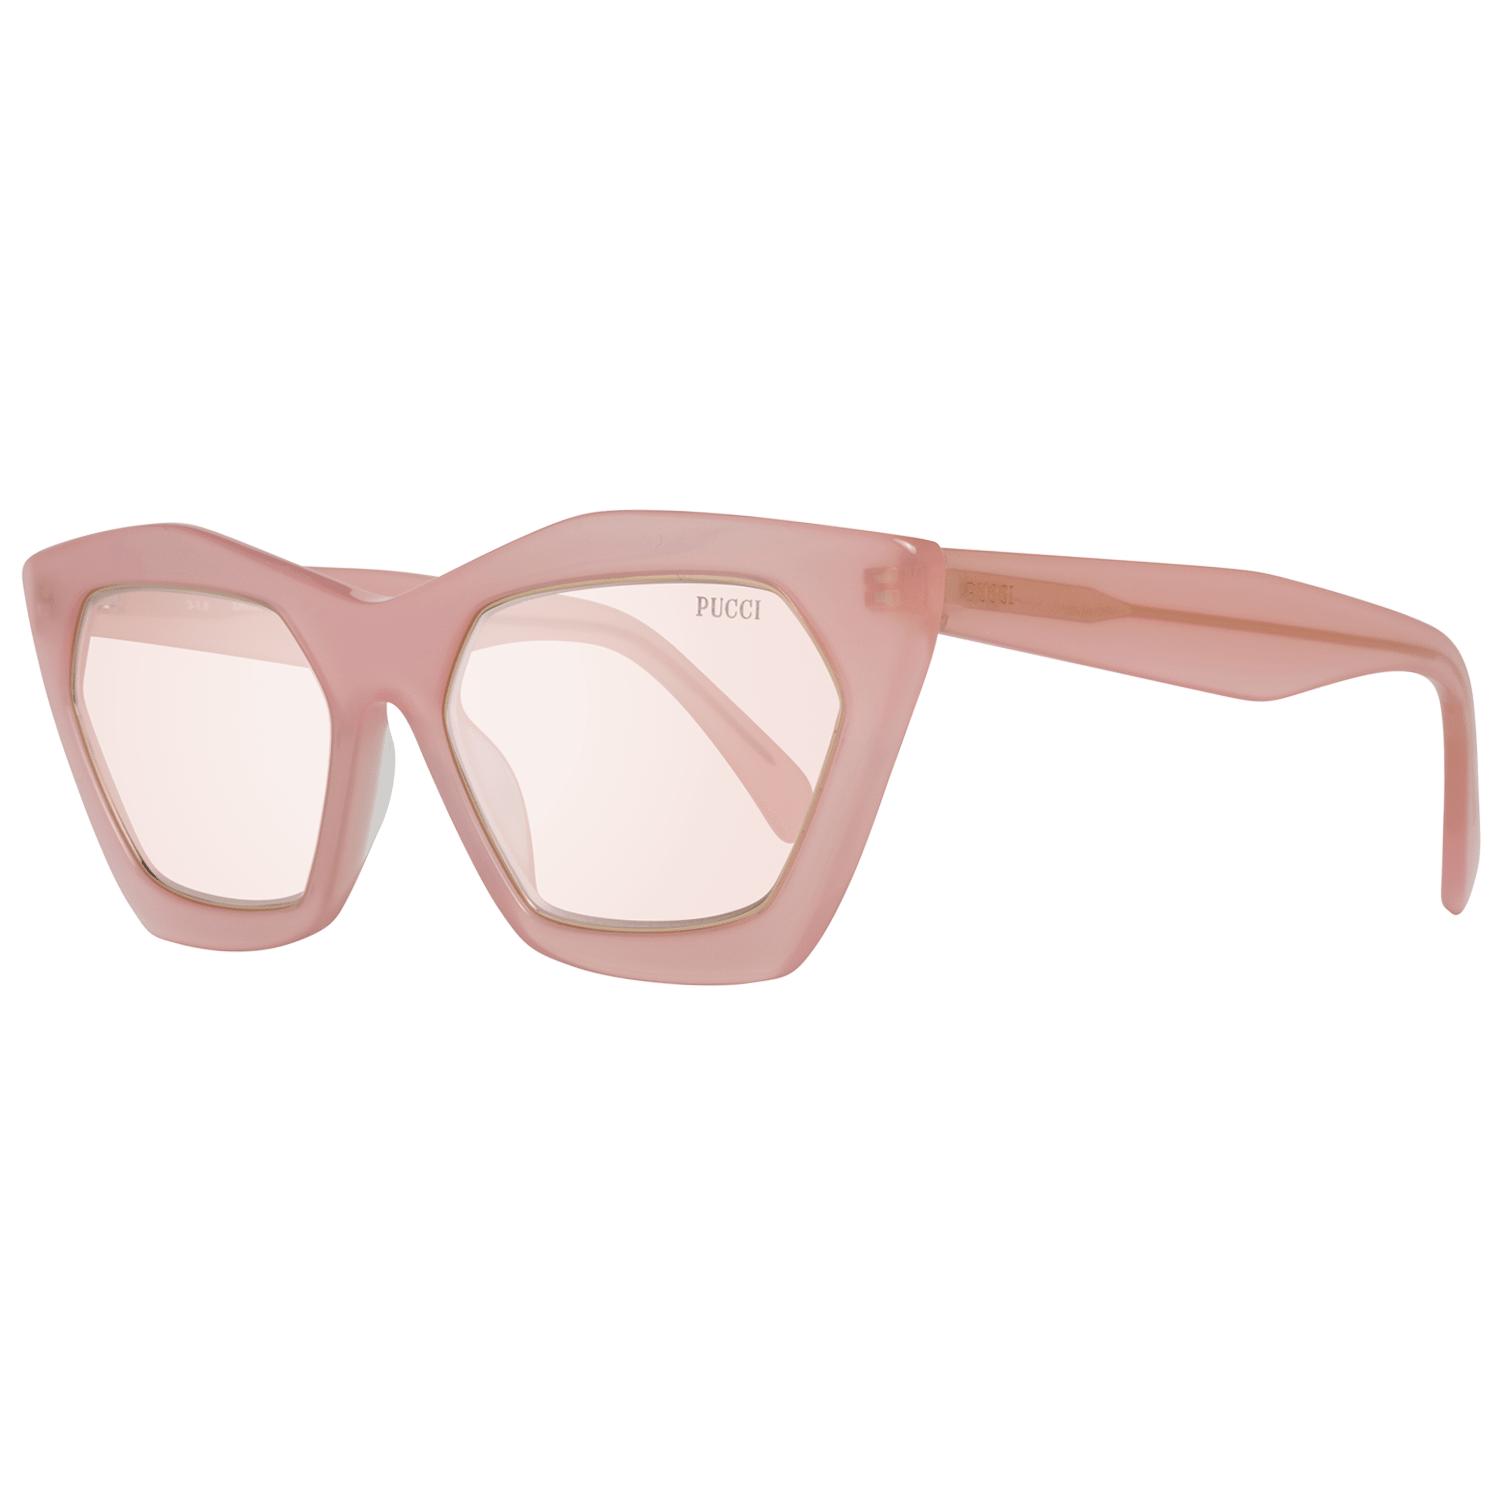 Emilio Pucci Sunglasses in Pink | Lyst